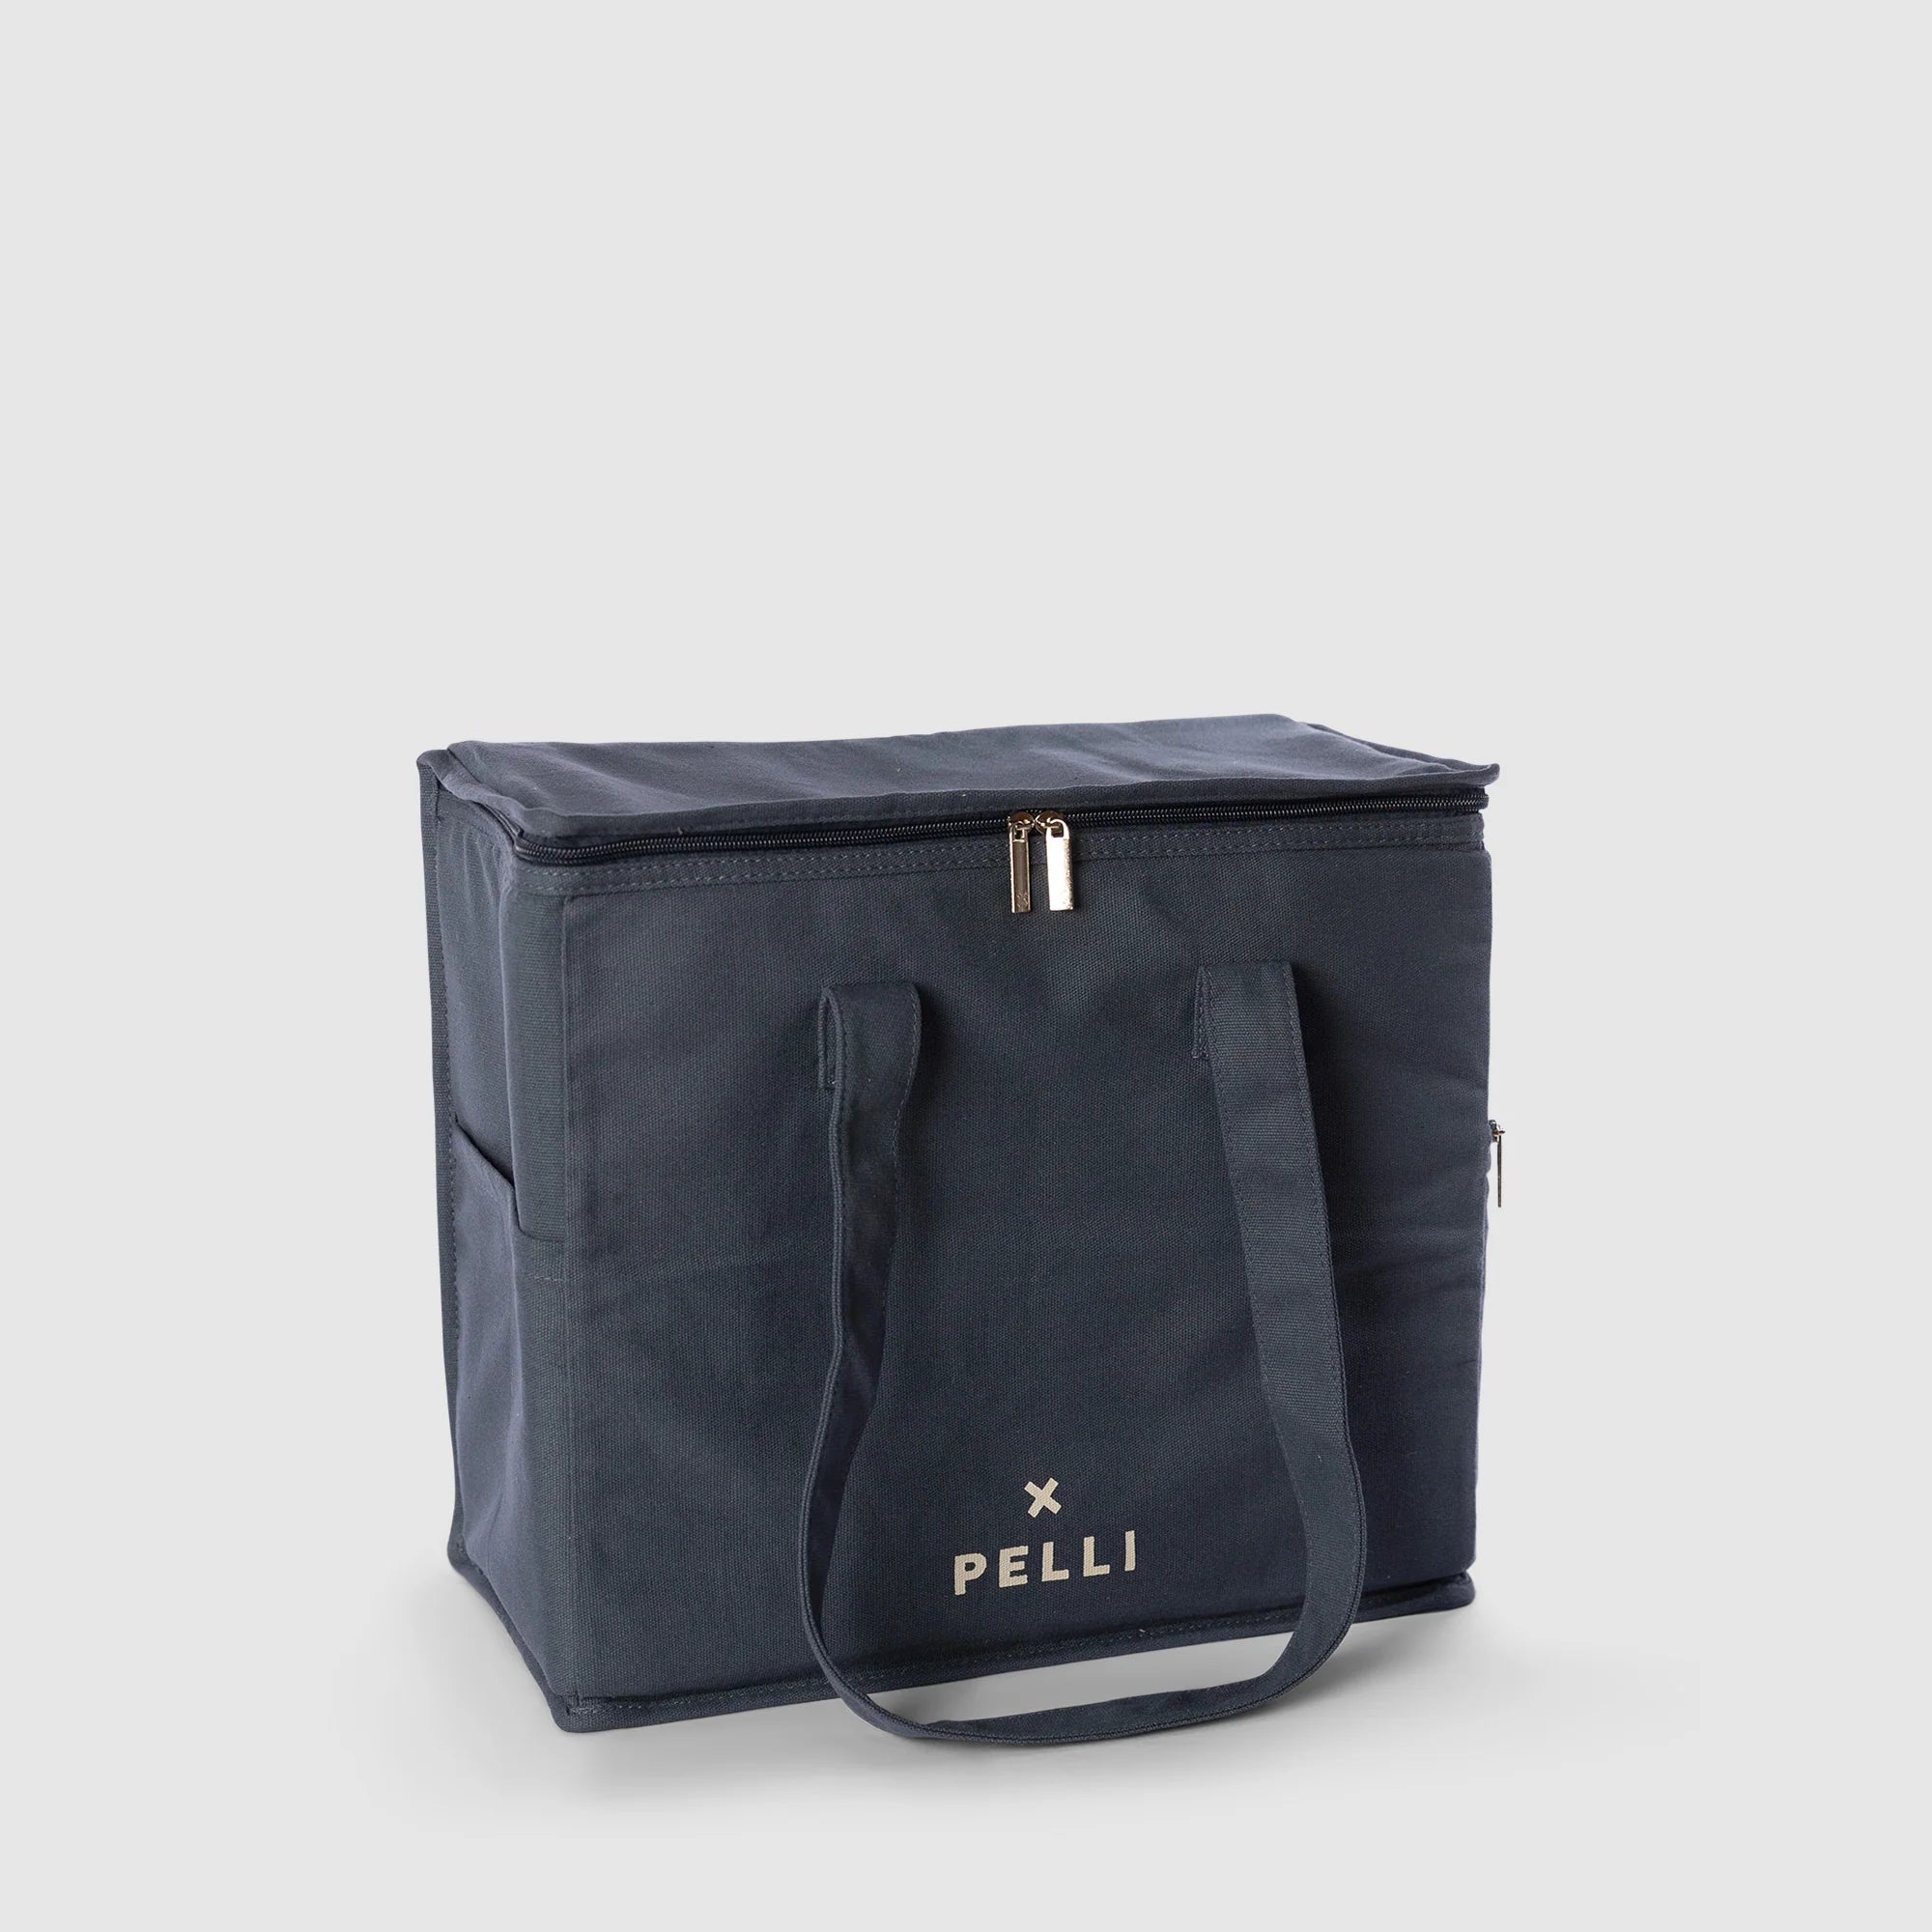 Pelli 'Chill Homie' Large Cooler Bag (Canvas) Storm Blue